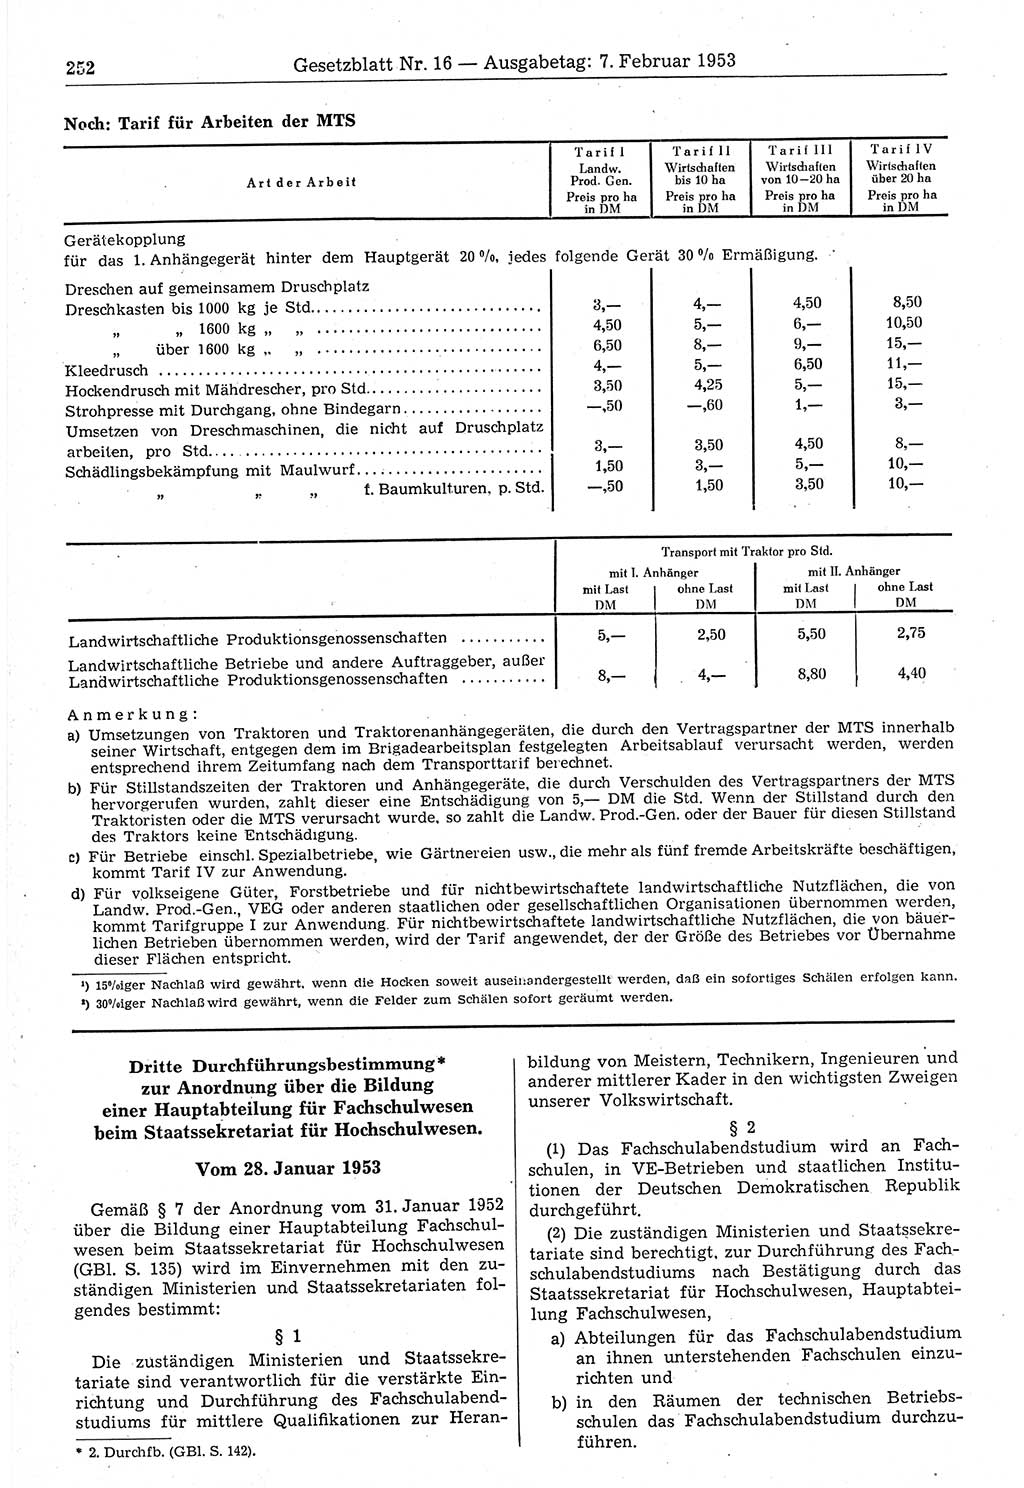 Gesetzblatt (GBl.) der Deutschen Demokratischen Republik (DDR) 1953, Seite 252 (GBl. DDR 1953, S. 252)